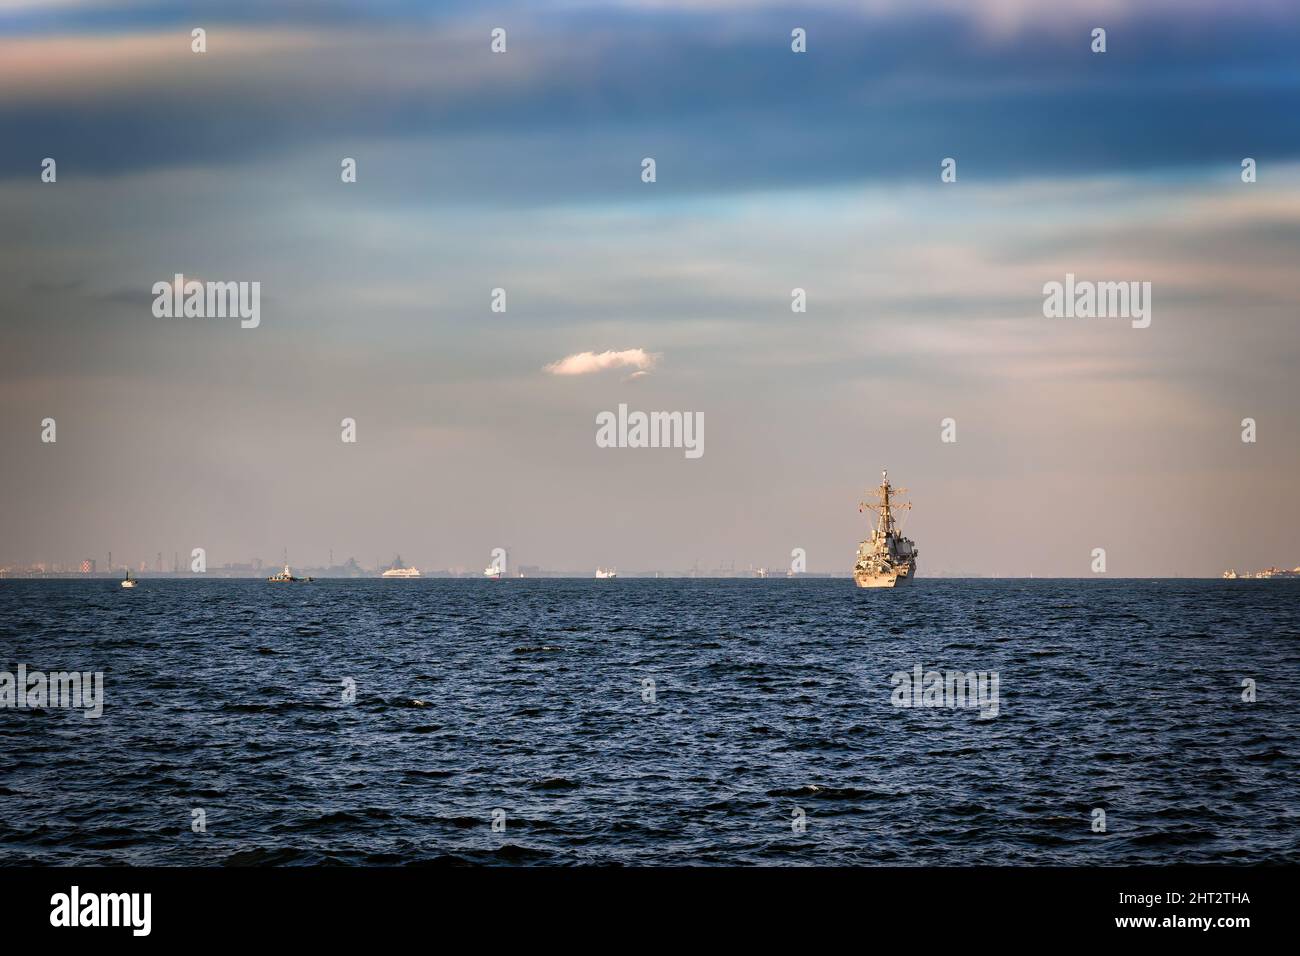 Una Marina americana Destroy si trova ancorata nella Baia di Tokyo al largo della costa di Yokosuka, Giappone. Foto Stock